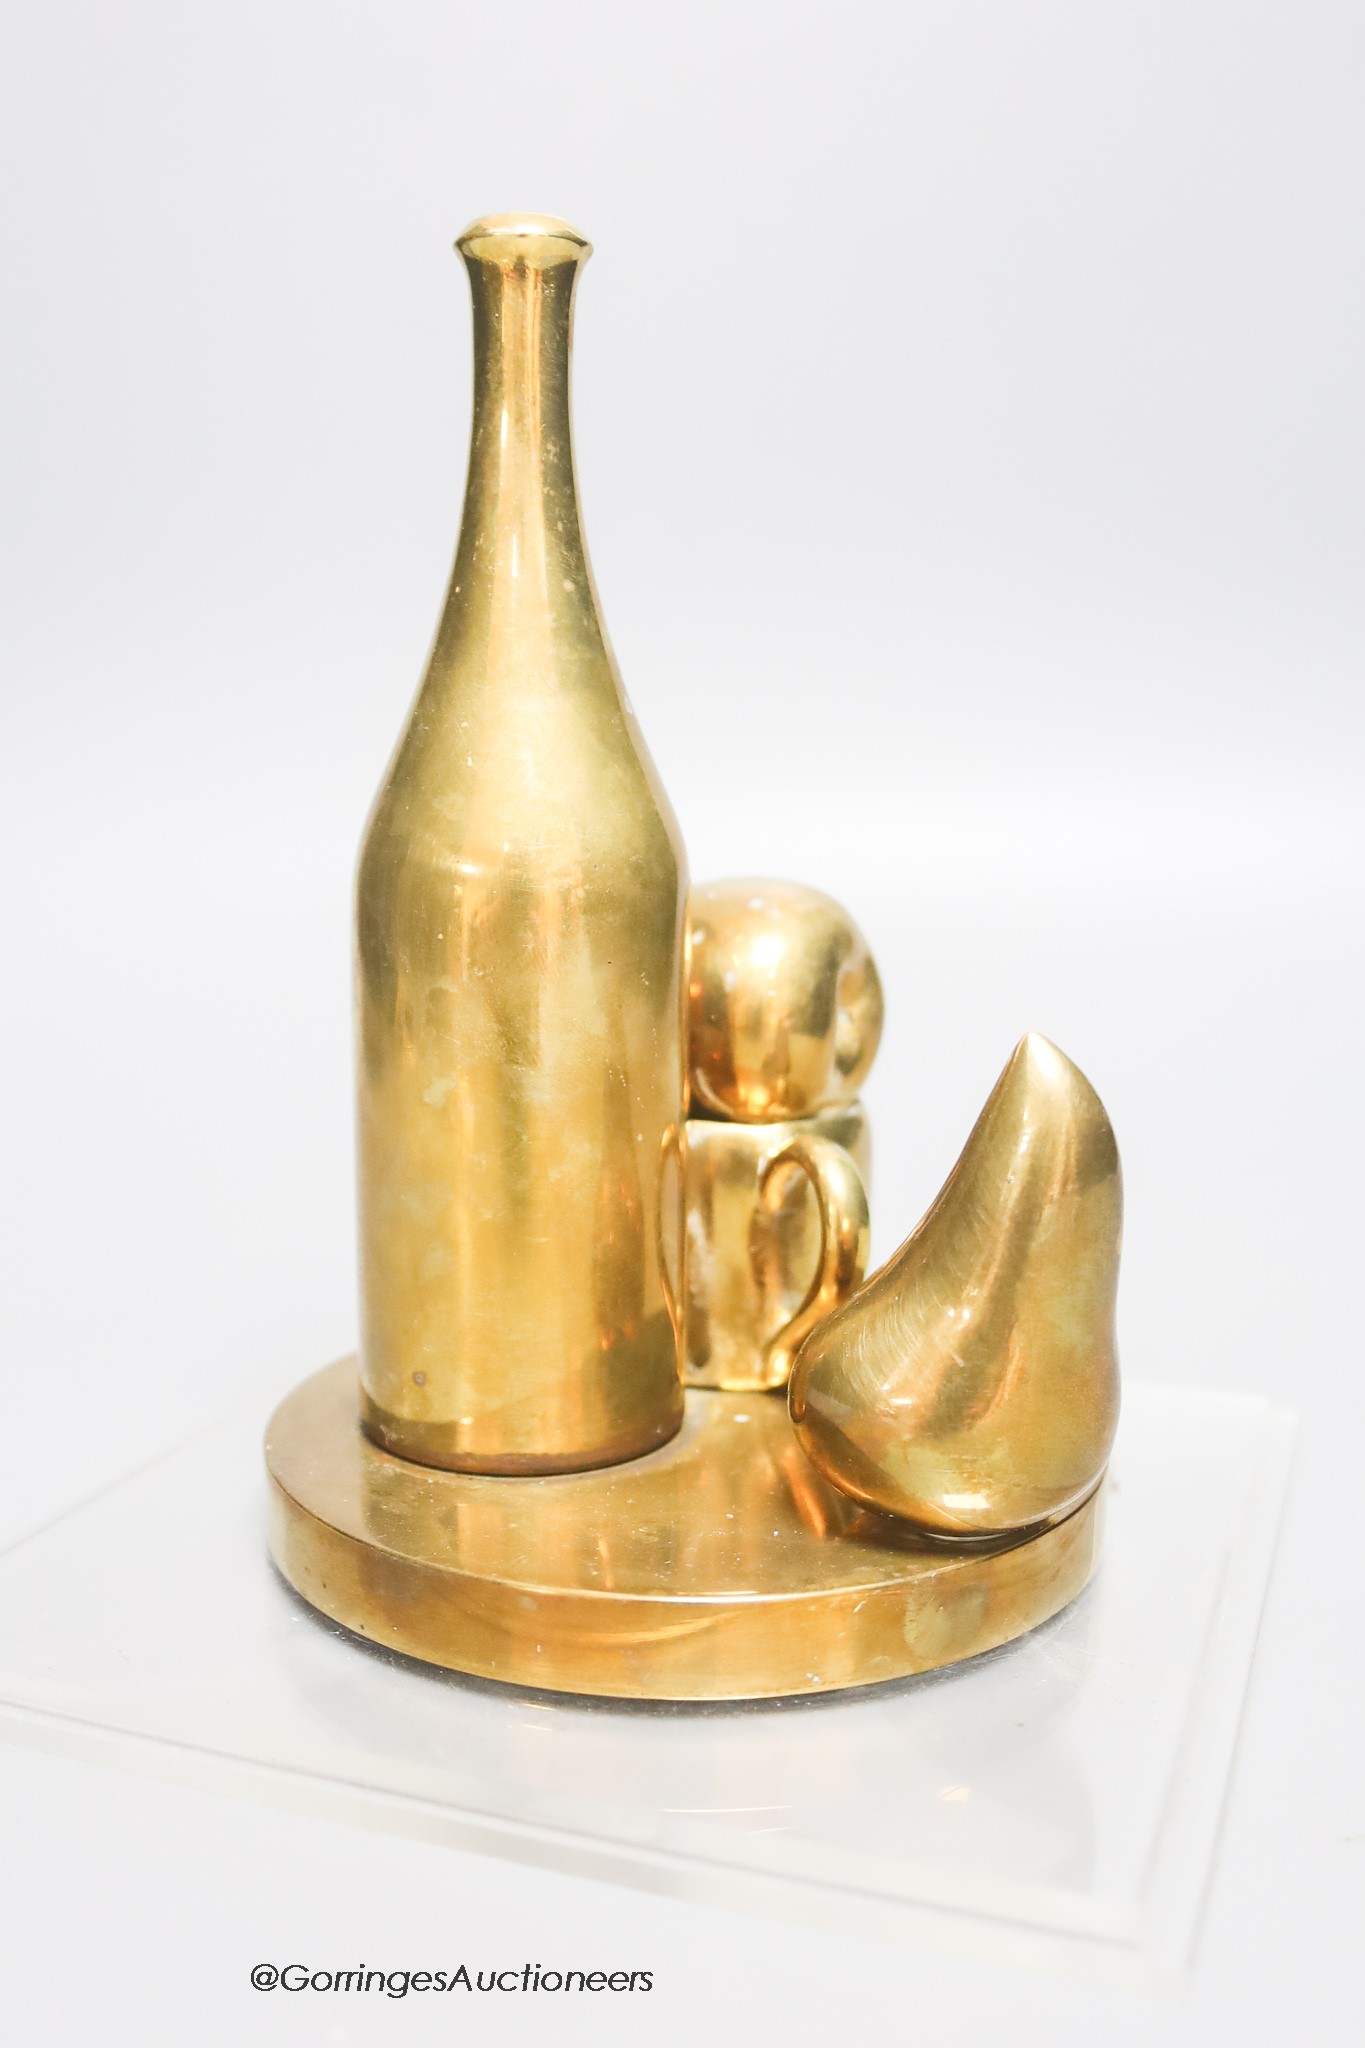 Paul Suttman. A bronze still life model, height 16cm